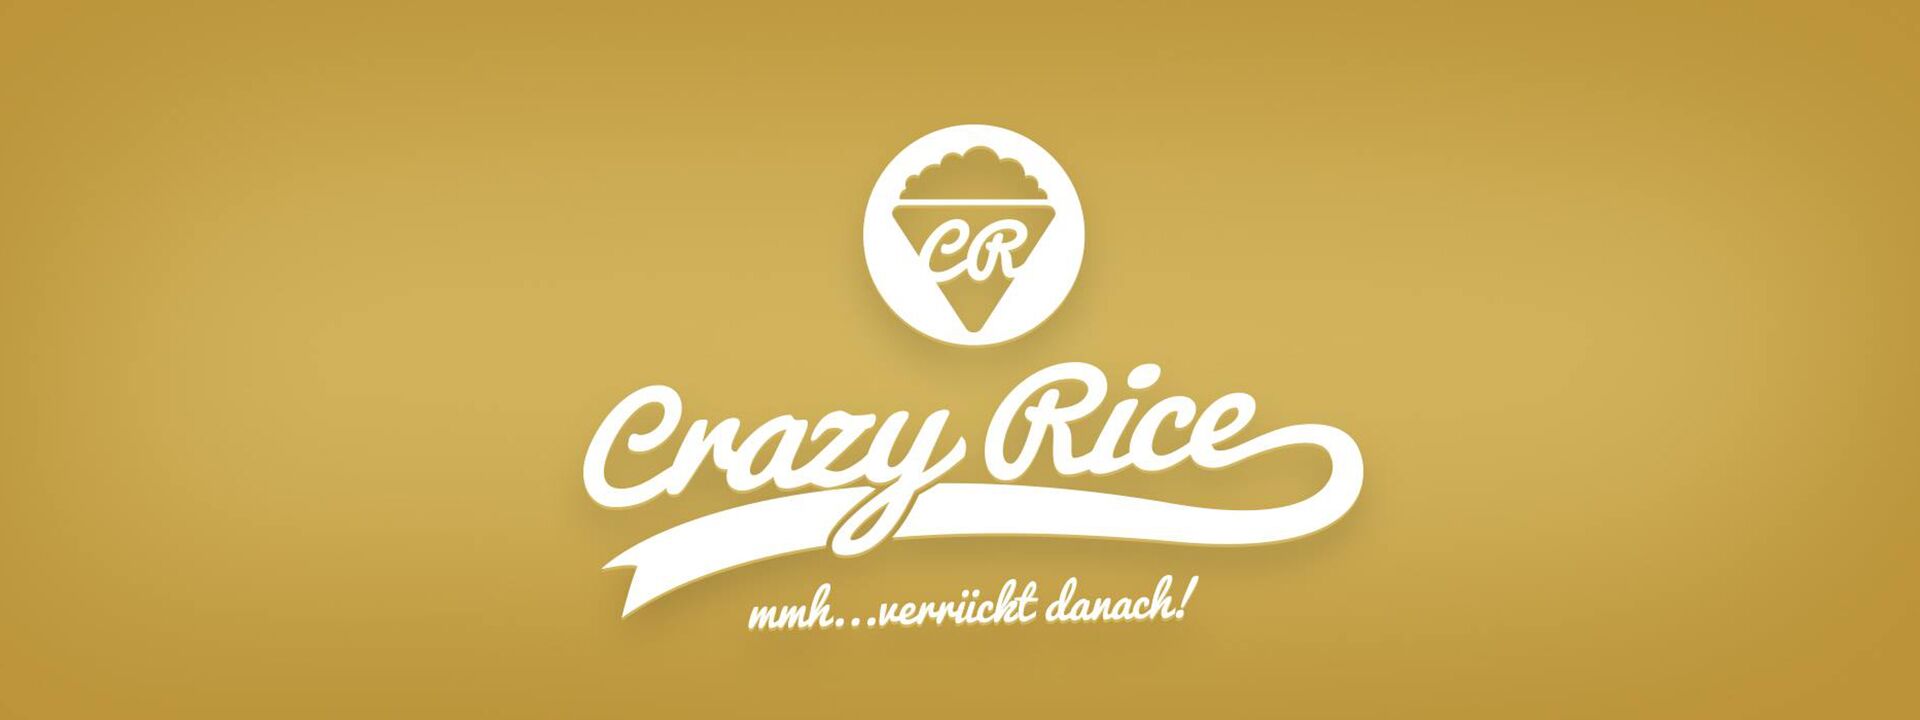 Crazy Rice Menü Crazy Rice